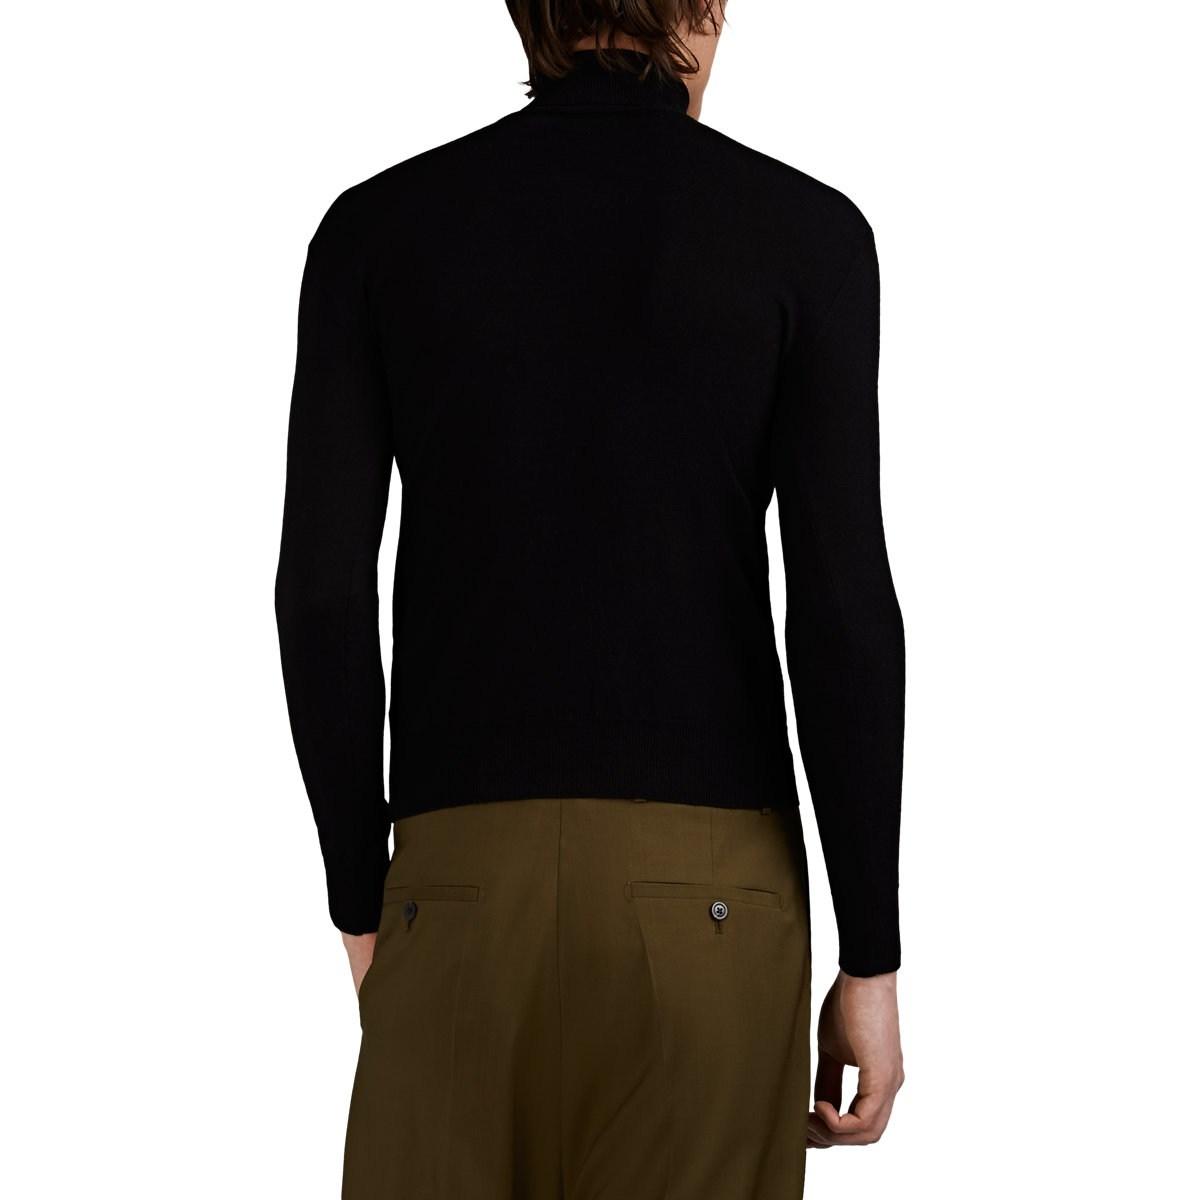 Raf Simons Logo Wool-blend Turtleneck Sweater in Black for Men - Lyst